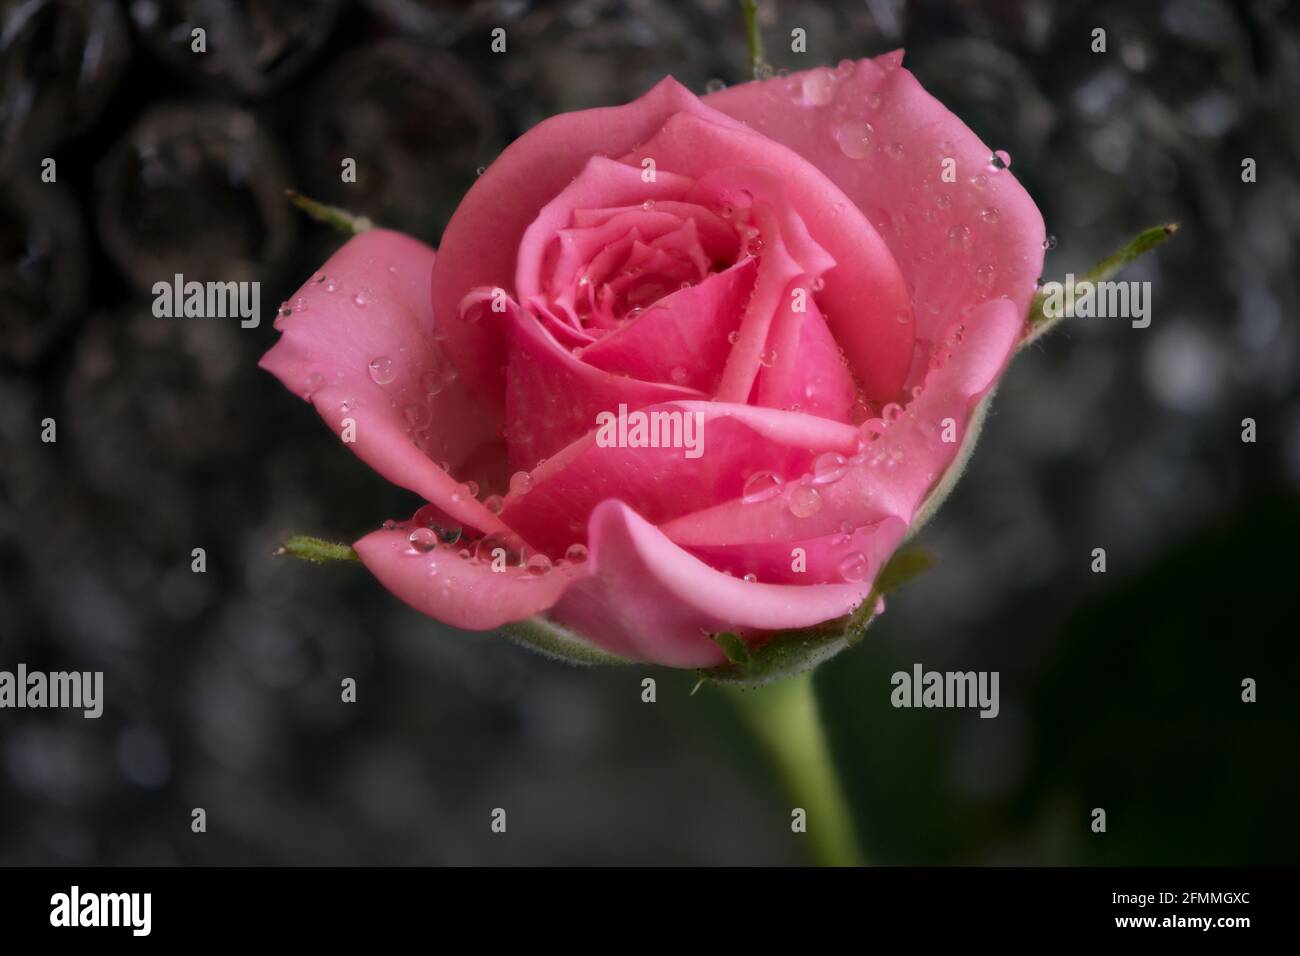 Nahaufnahme einer einzelnen rosa Rose mit Wassertropfen auf einem glitzernden Wasserfall-ähnlichen Hintergrund. Stockfoto